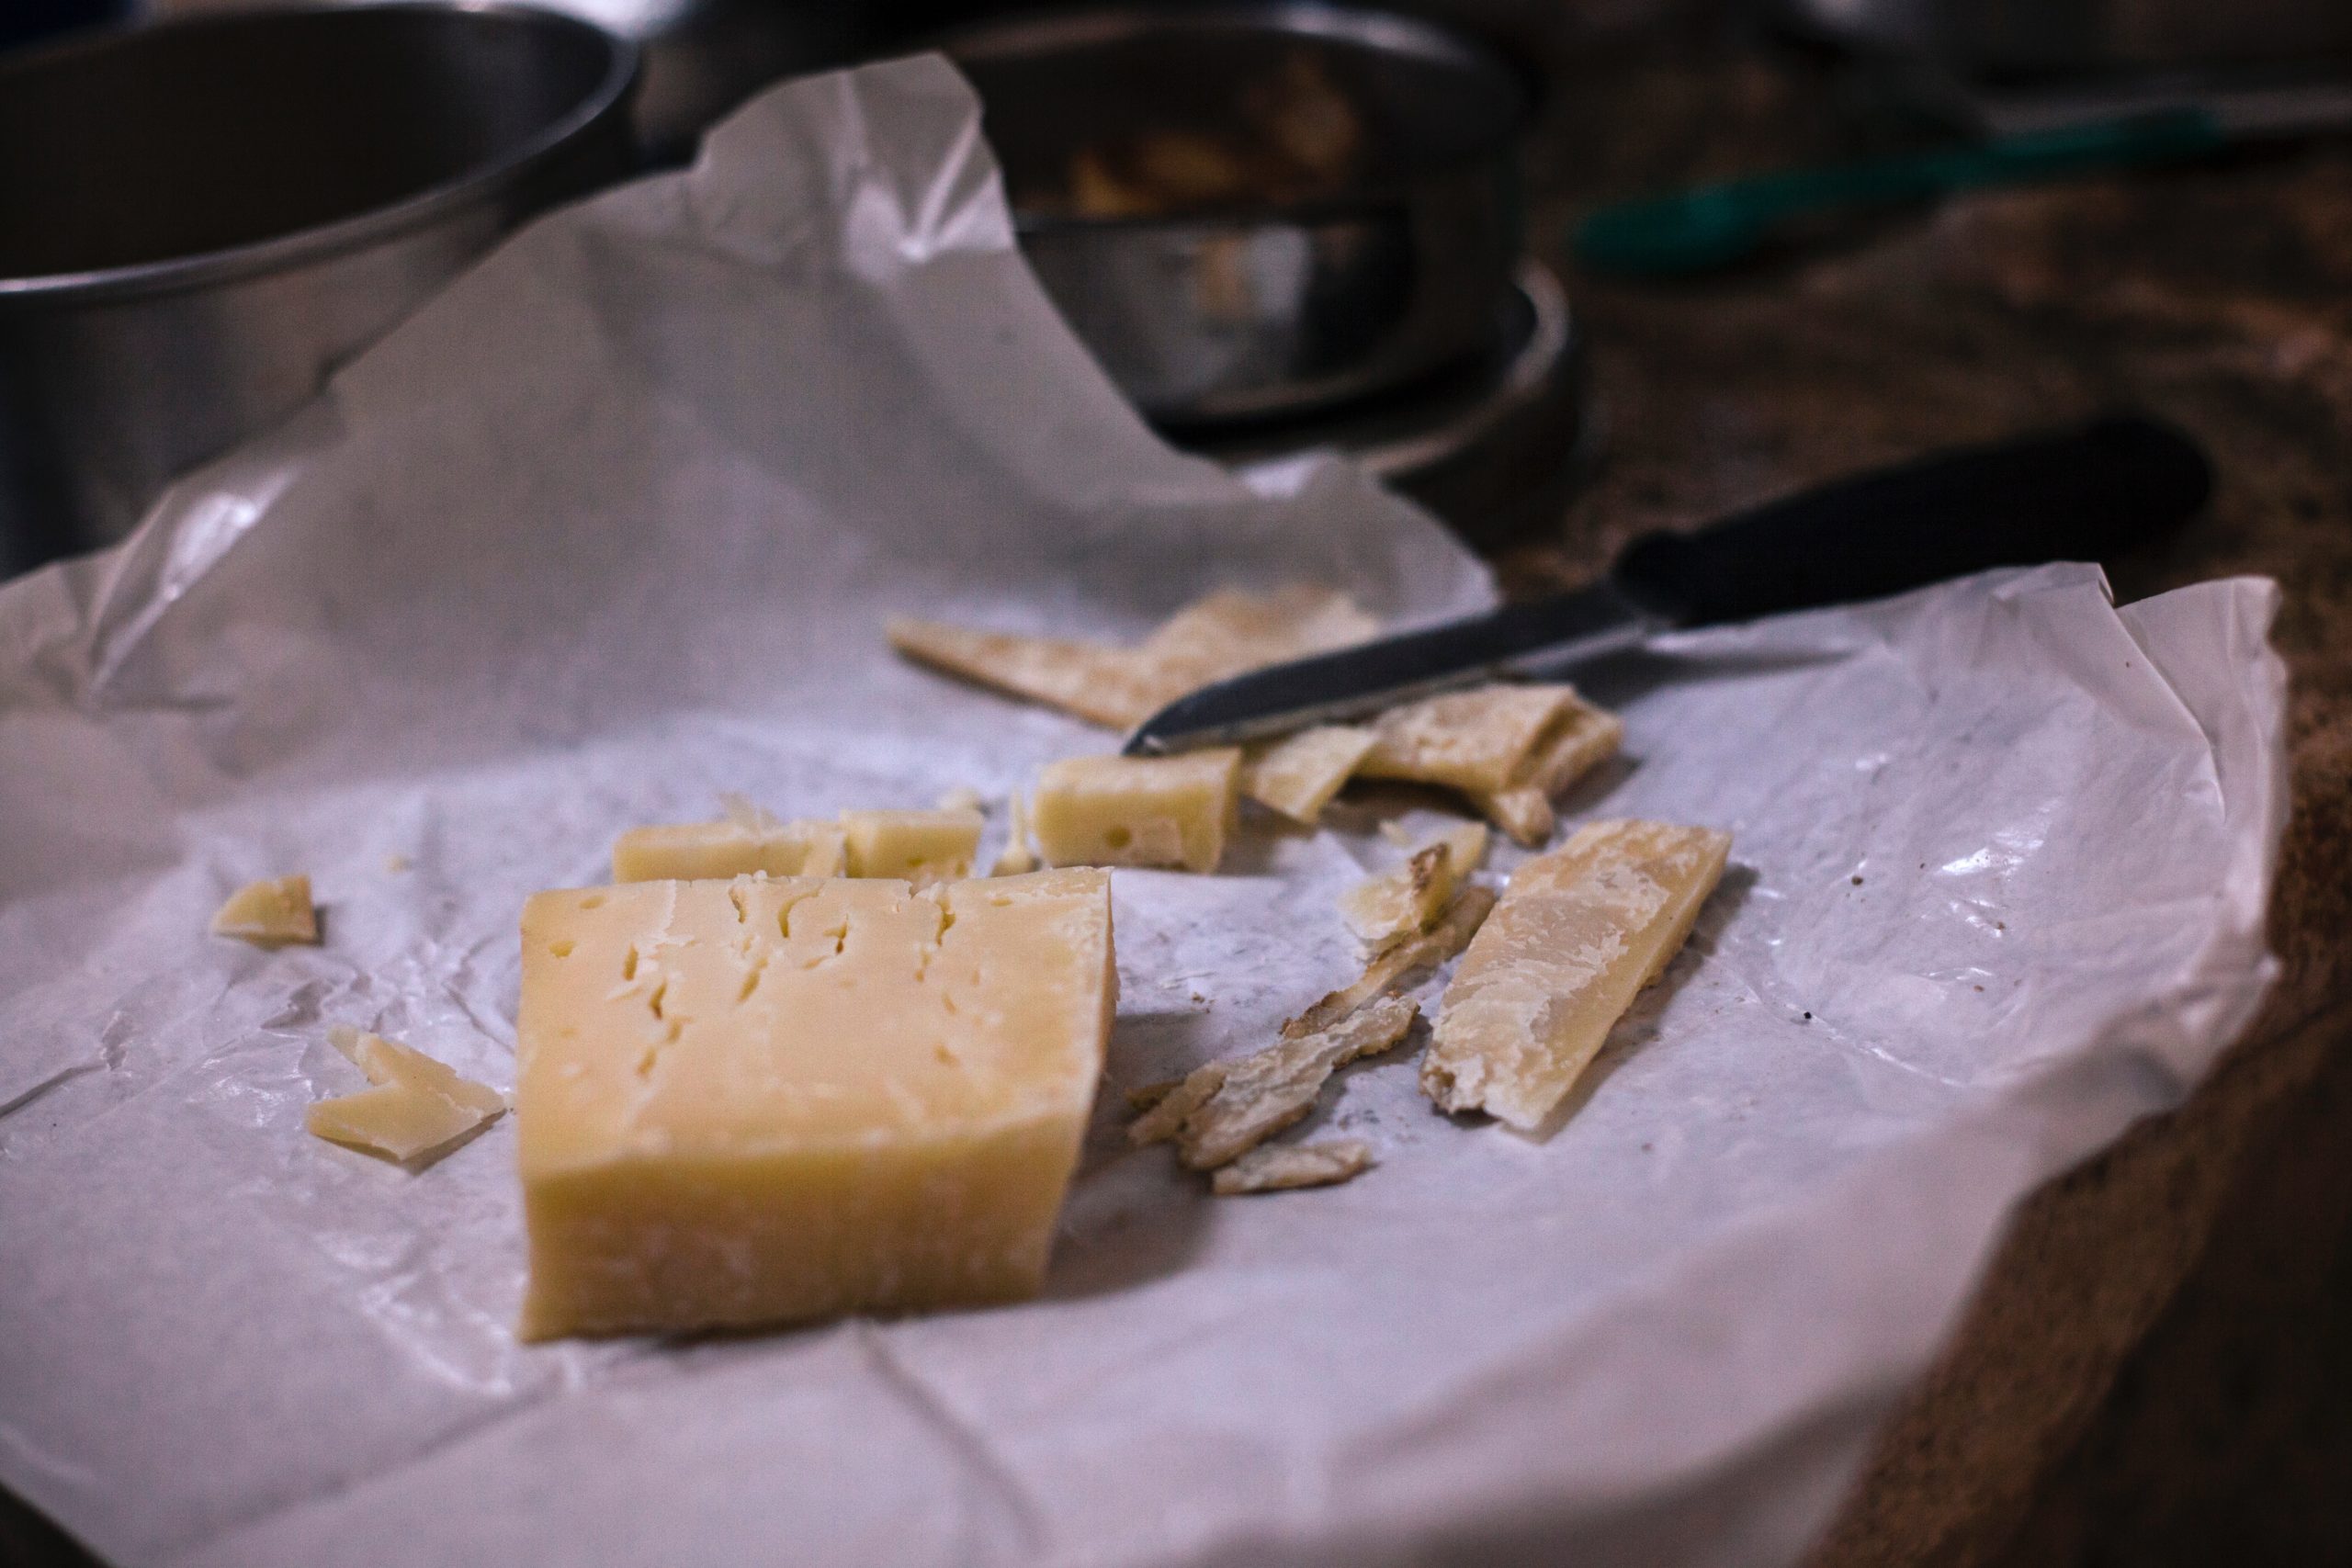 Los quesos contienen componentes que pueden provocar alergias.